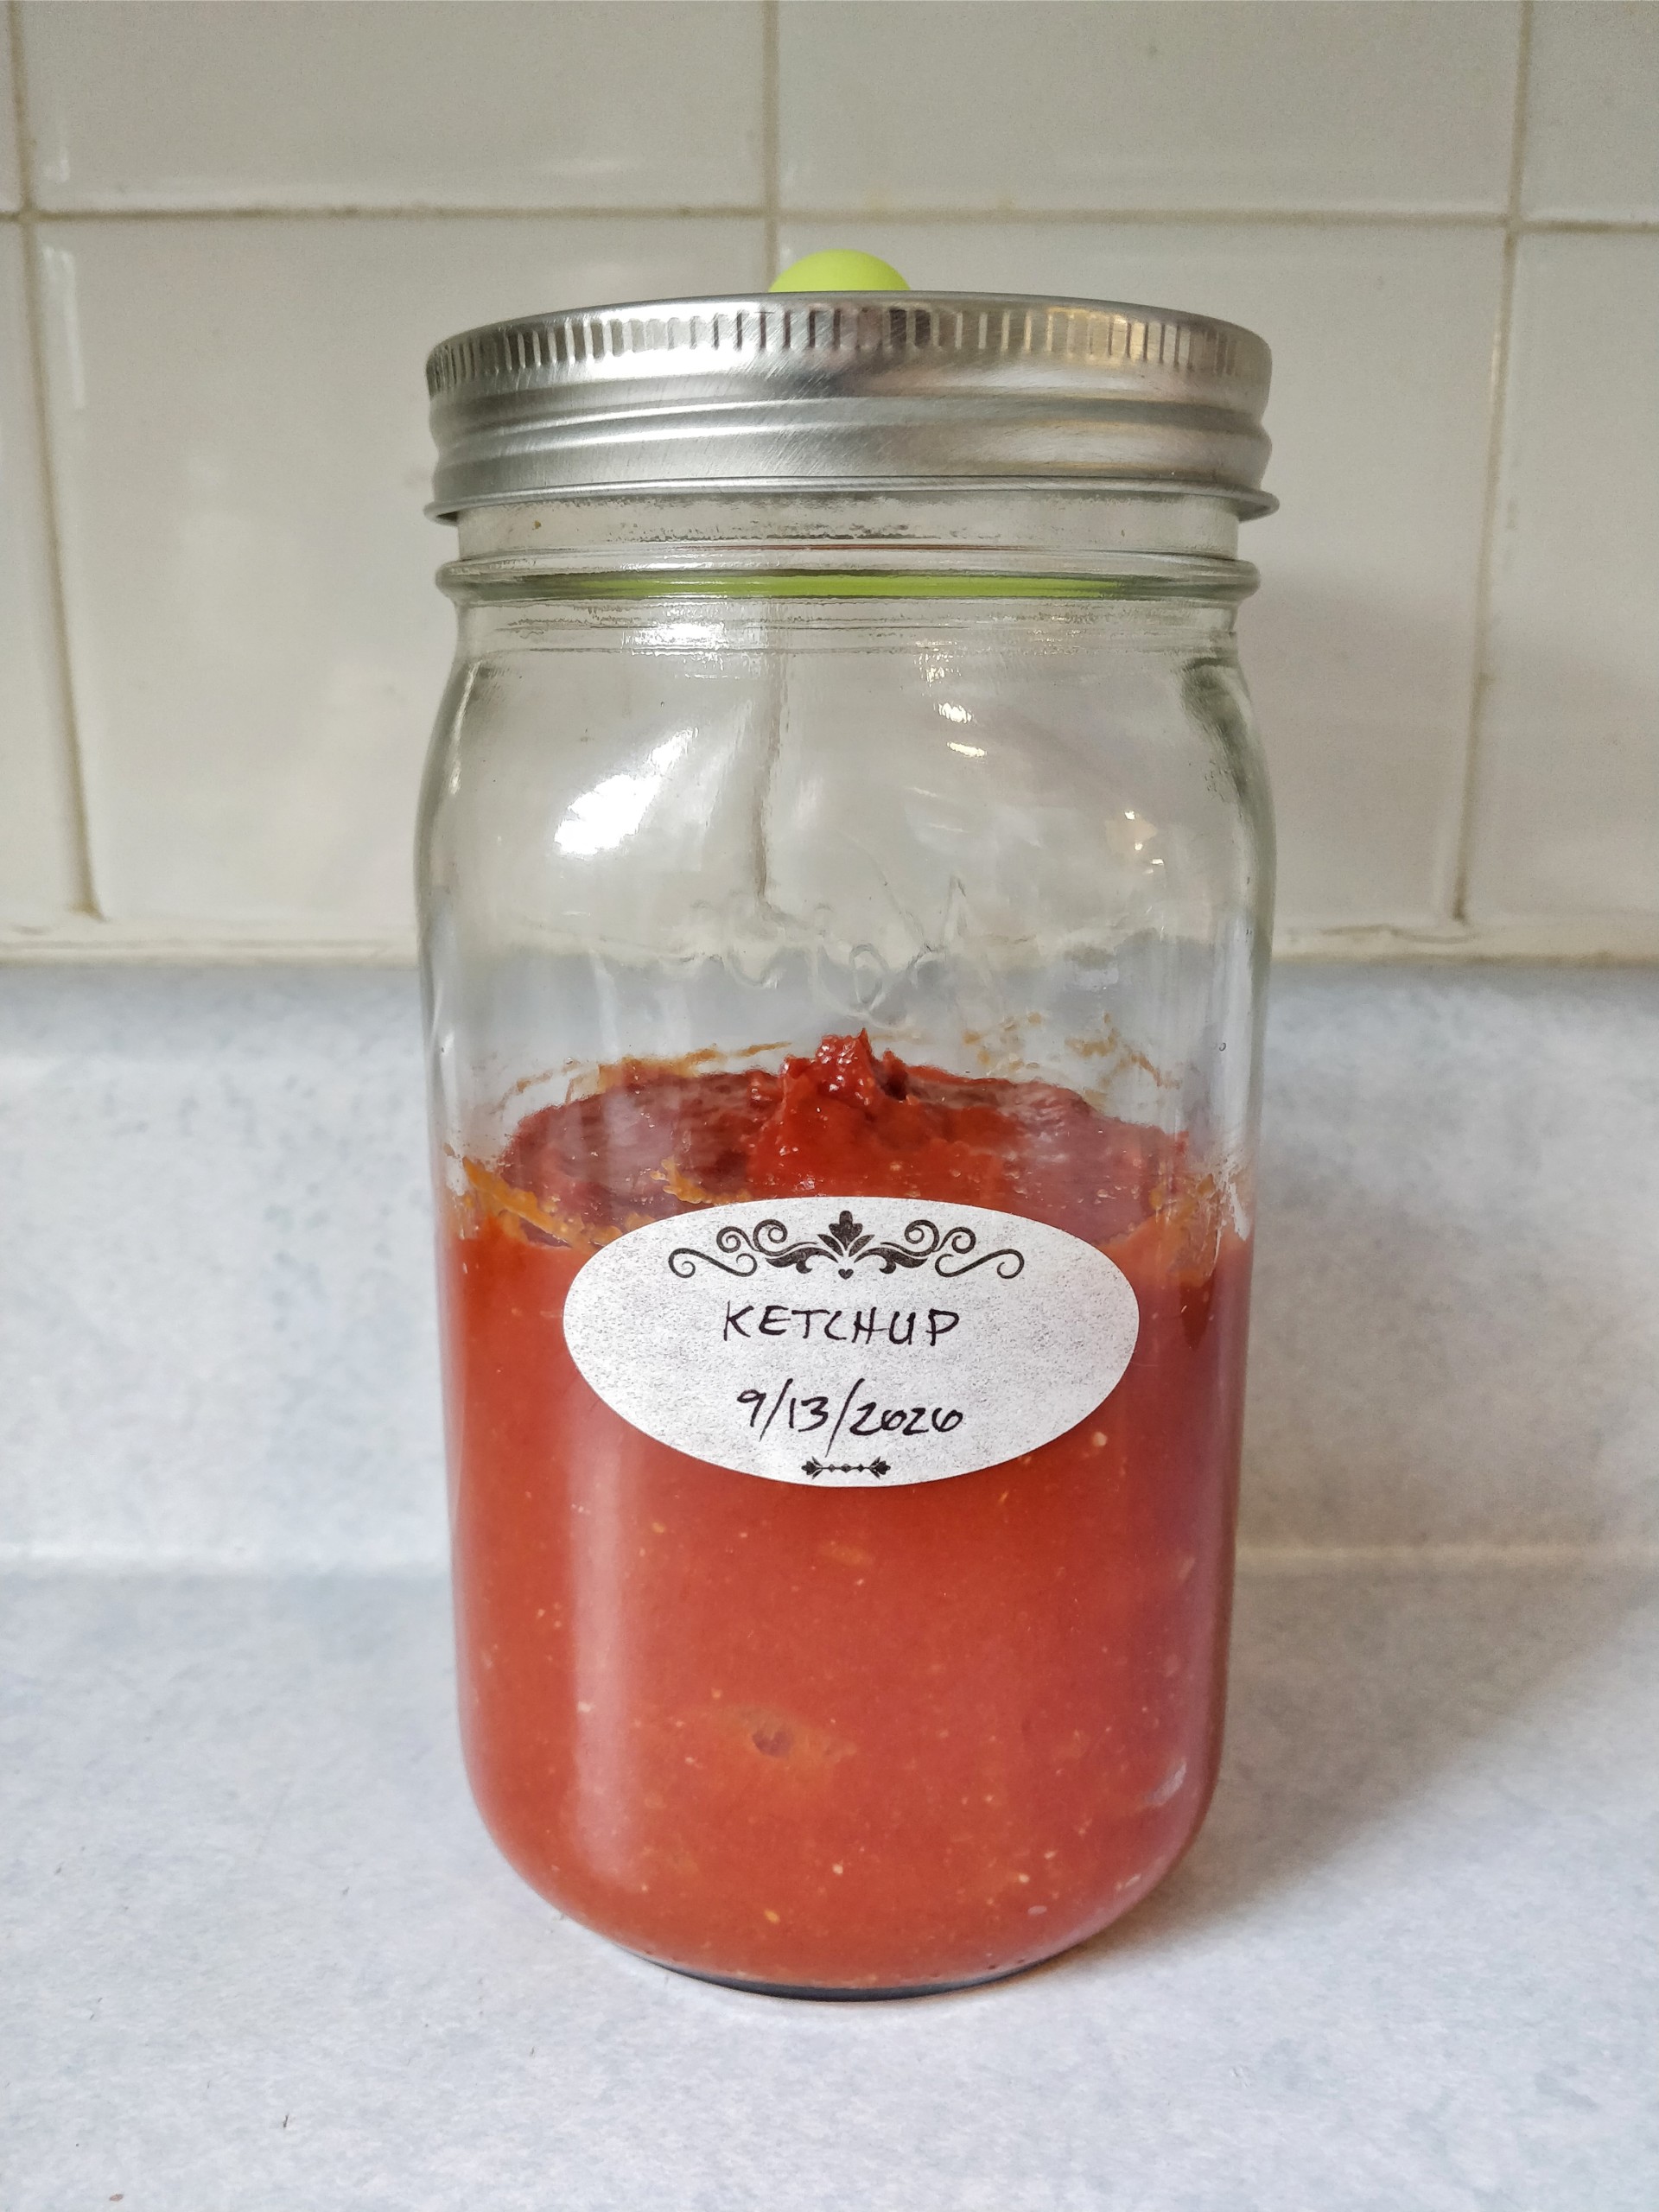 Ketchup in a jar